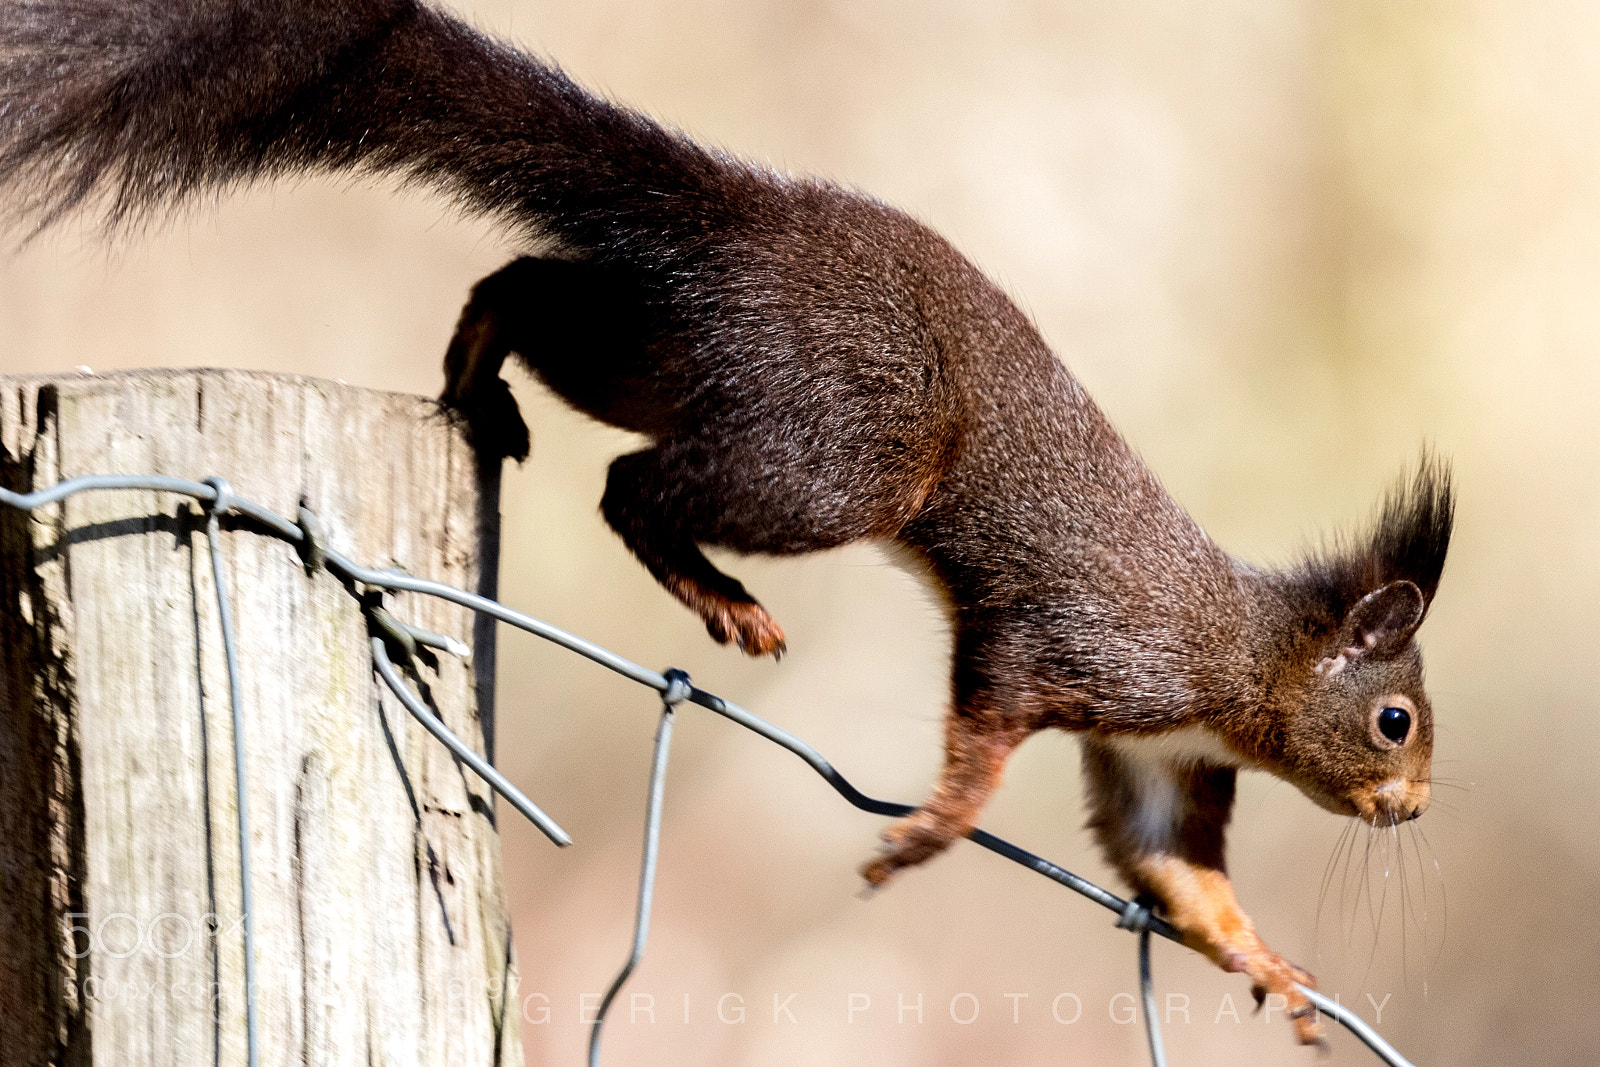 Canon EOS 80D sample photo. Squirrel #2 photography